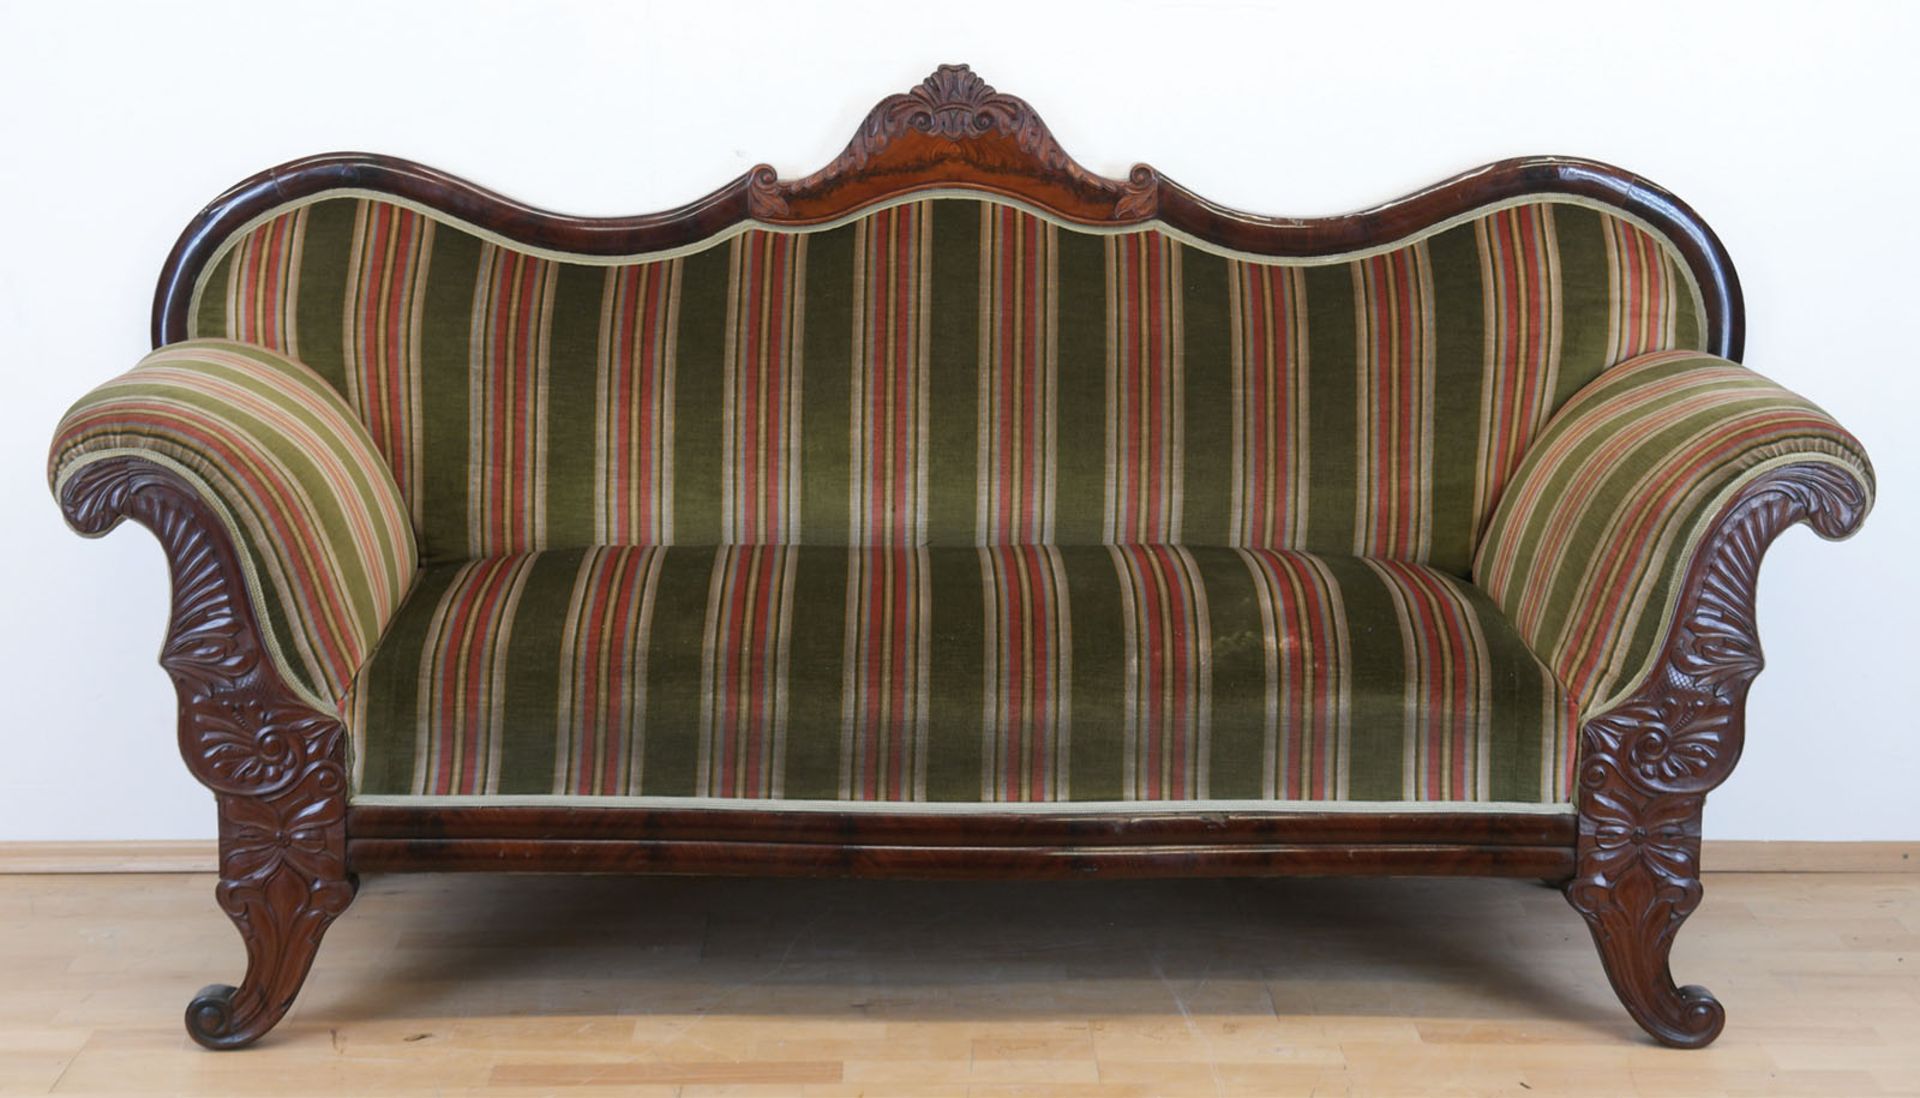 Biedermeier-Sofa, Hamburg um 1830, Mahagoni, beschnitzt, geschwungene Armlehnen und Rückenlehne, ge